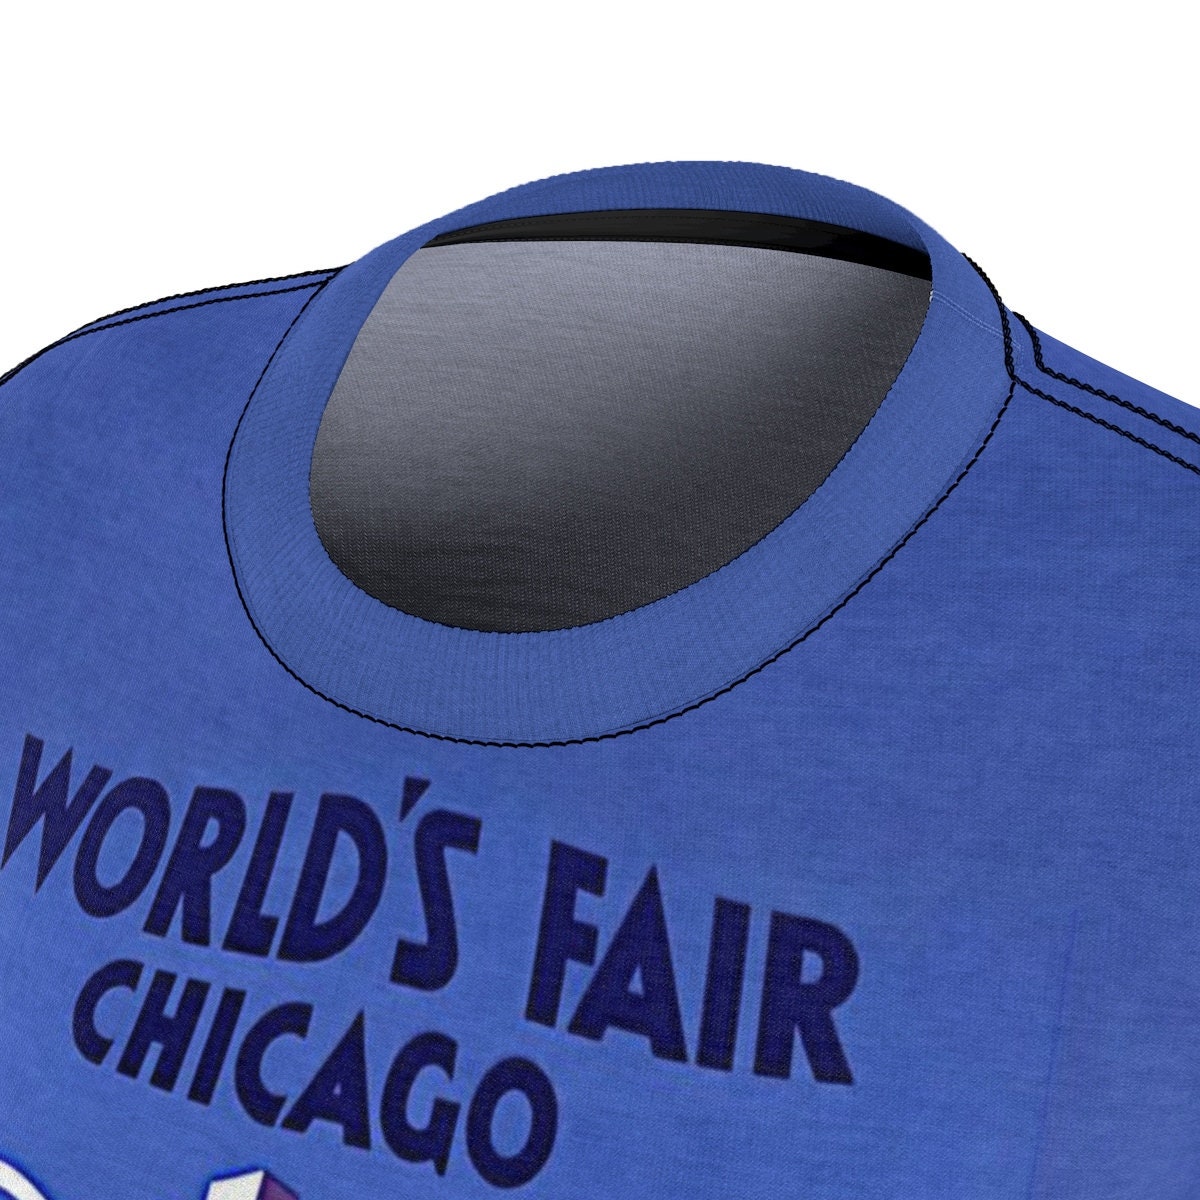 Chicago / Gift for Her / Women's / Tee T-Shirt Shirt / Travel / 60s / Valentine's gift / Poster / Vintage / Art / Peace / Love - Chloe Lambertin